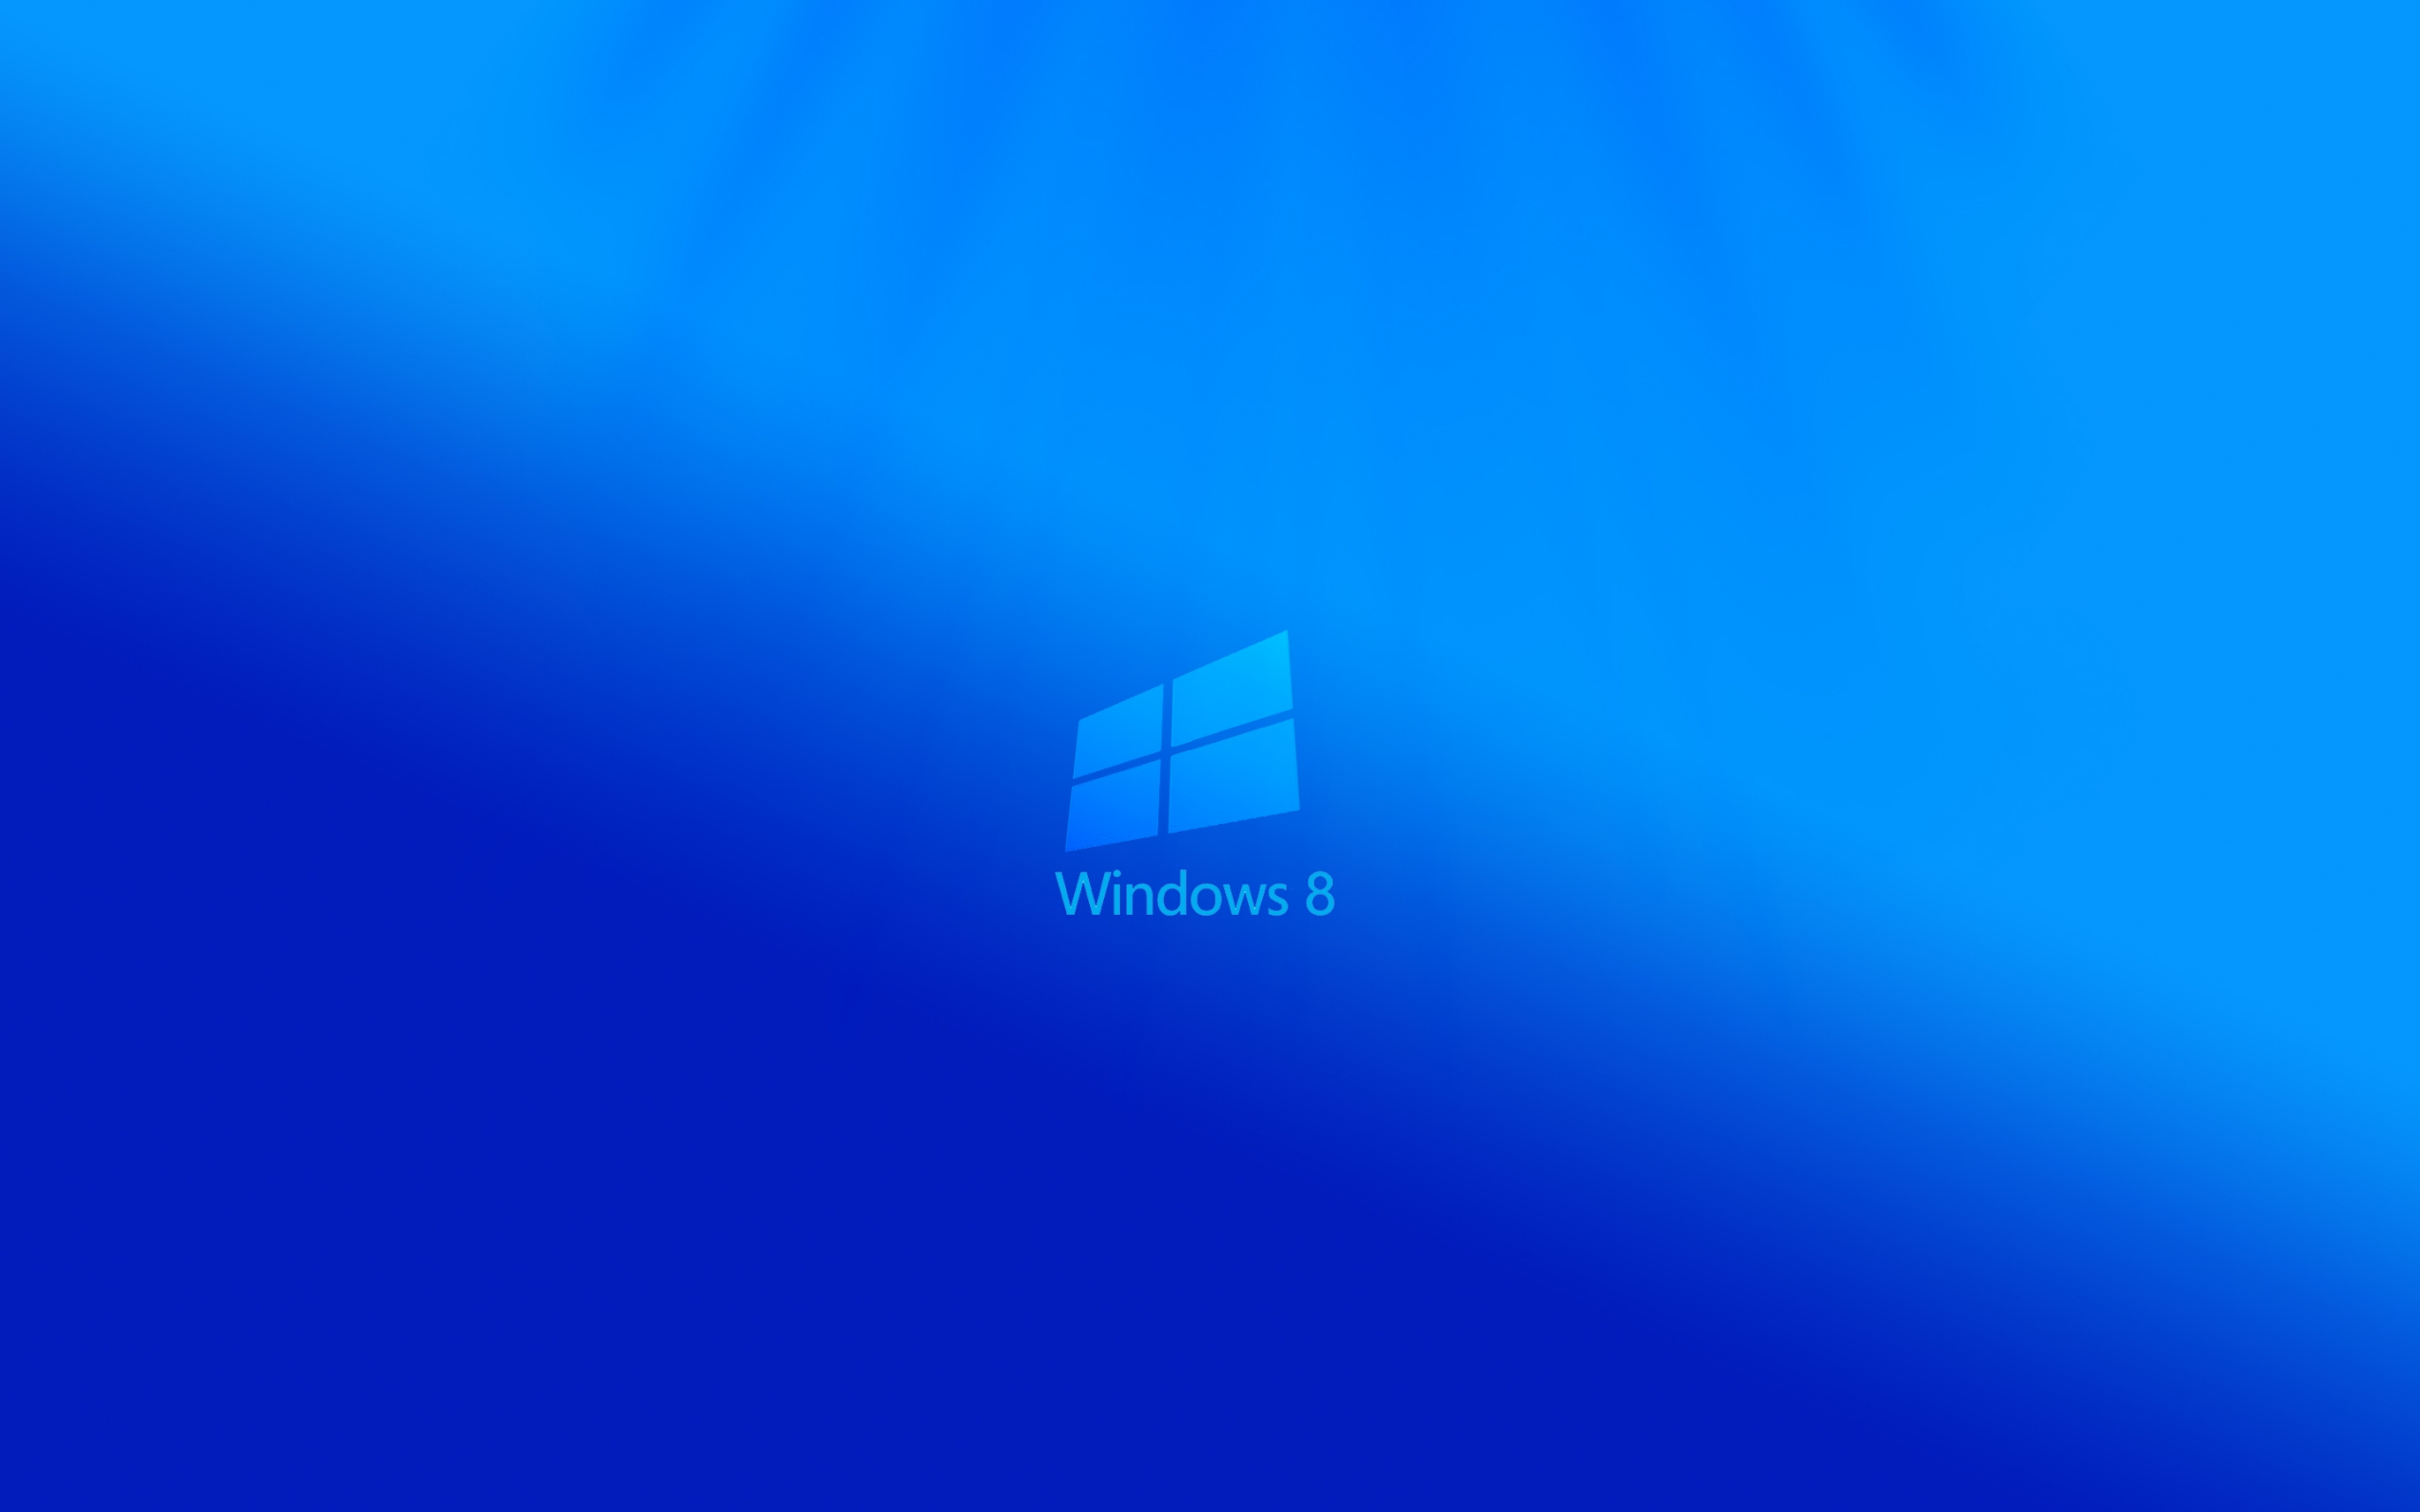 Windows 8 Light for 2560 x 1600 widescreen resolution